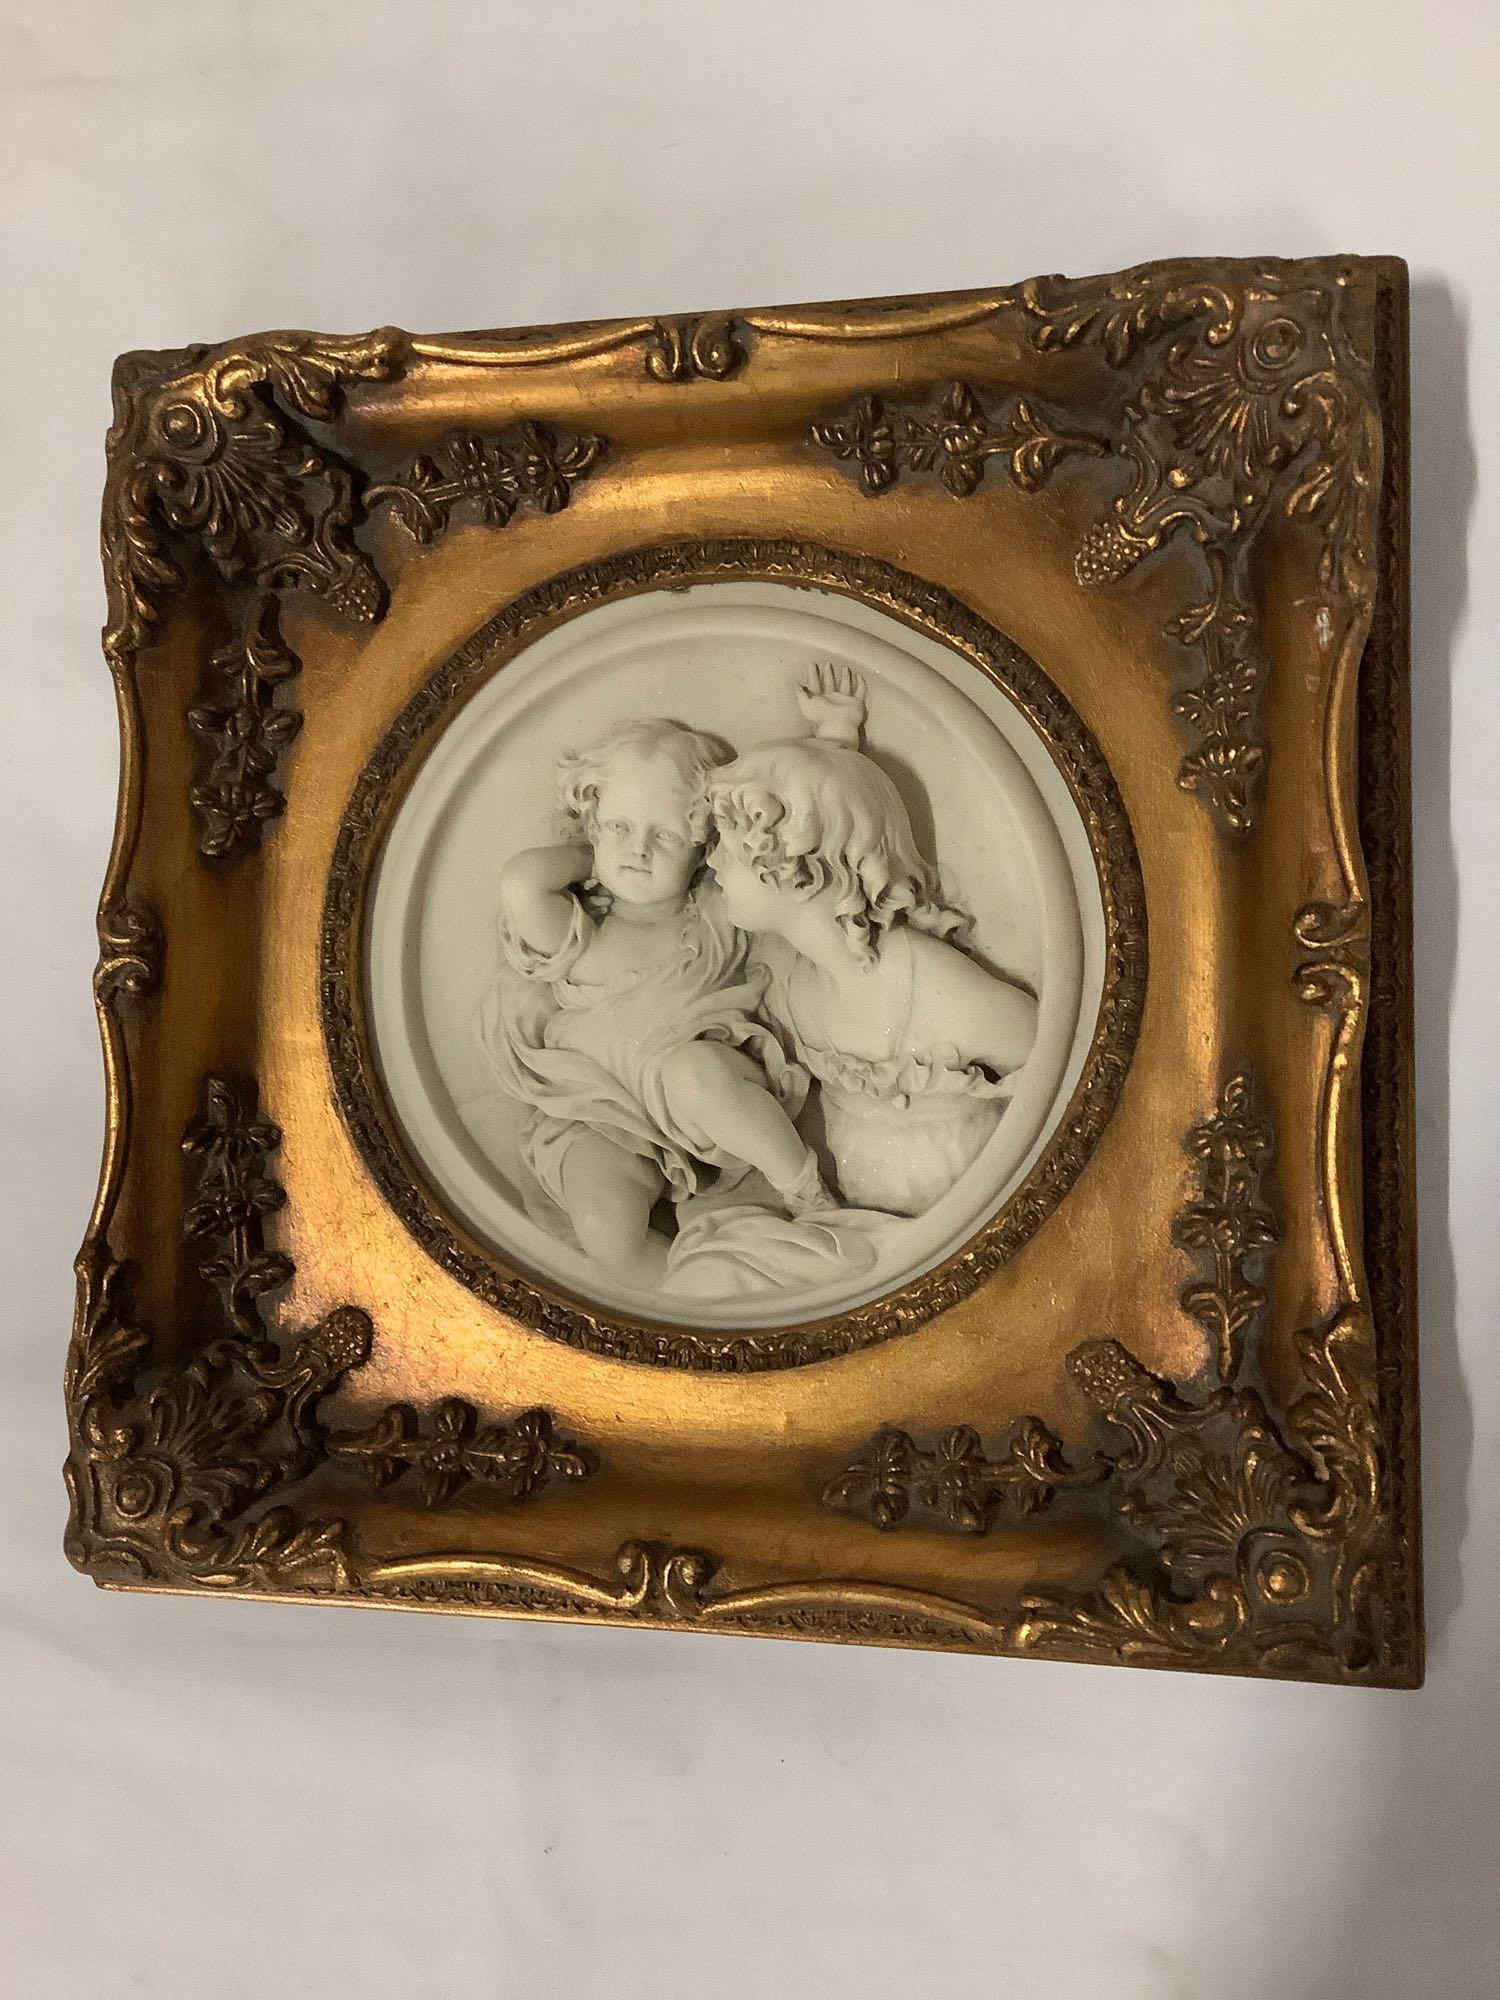 Antique gilt framed cherub relief marble art. Enrico Braga cherub plaque w/ Perfugium Regibus coin